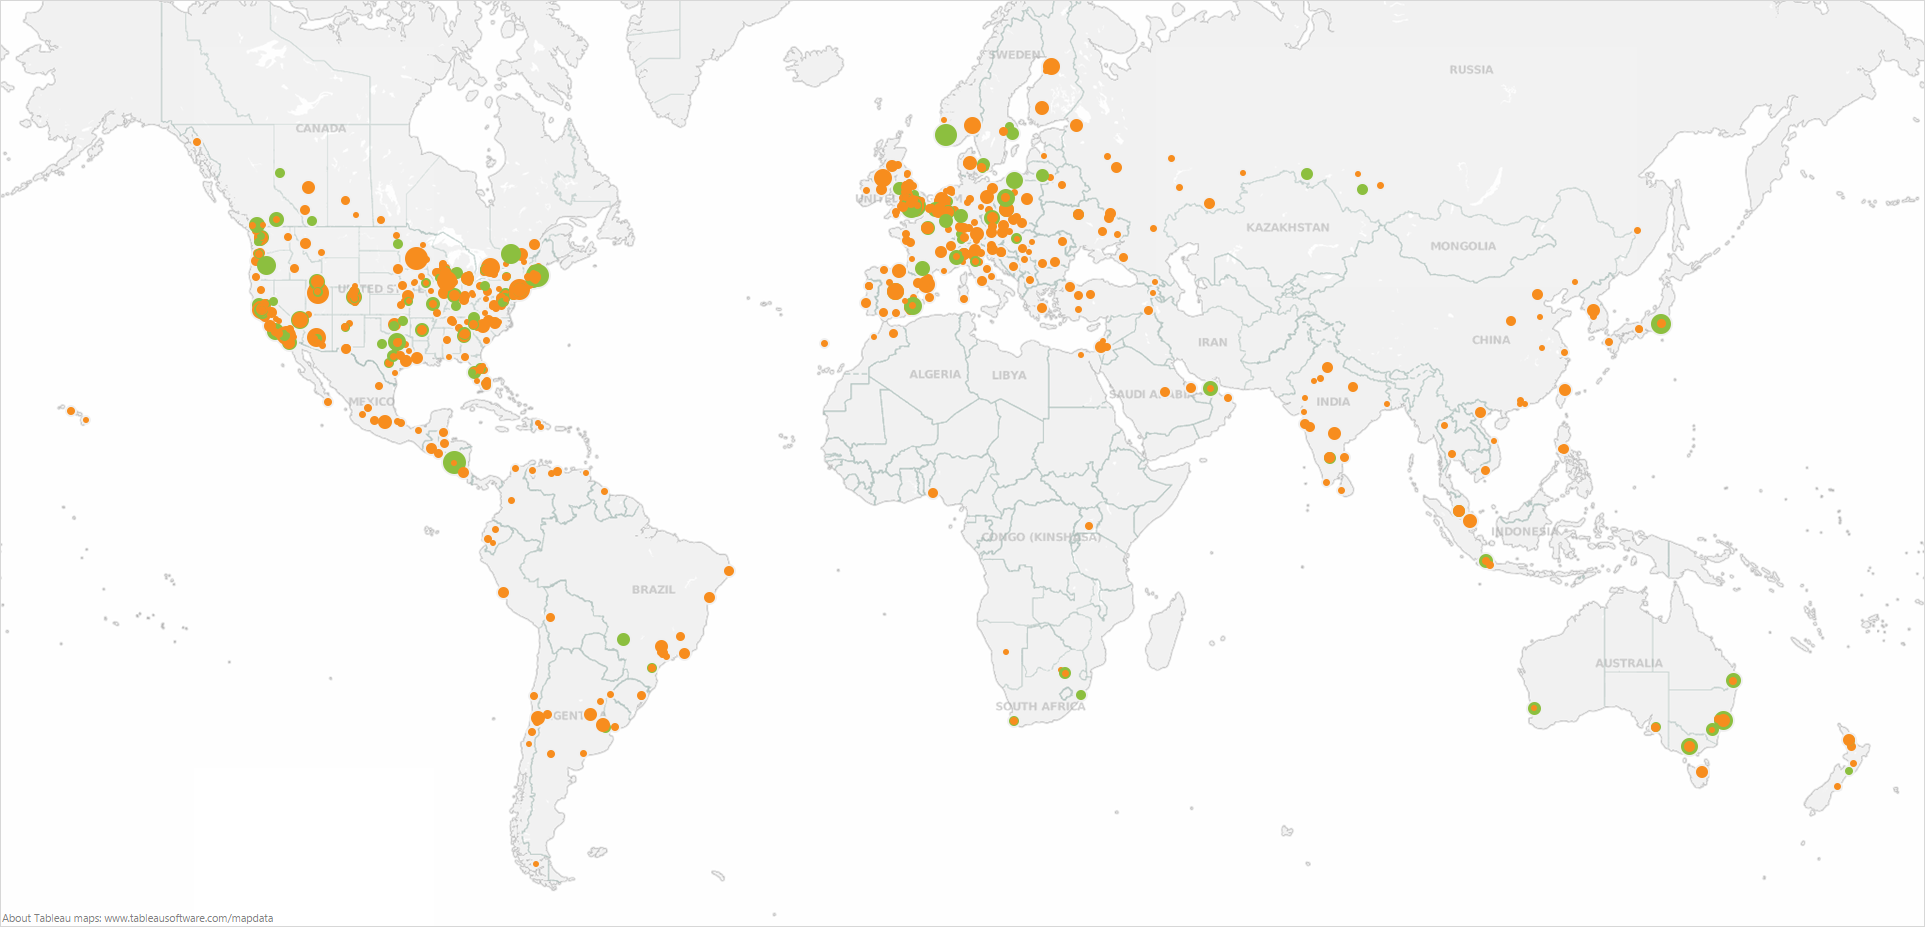 Lucidchart usage map 9/2013